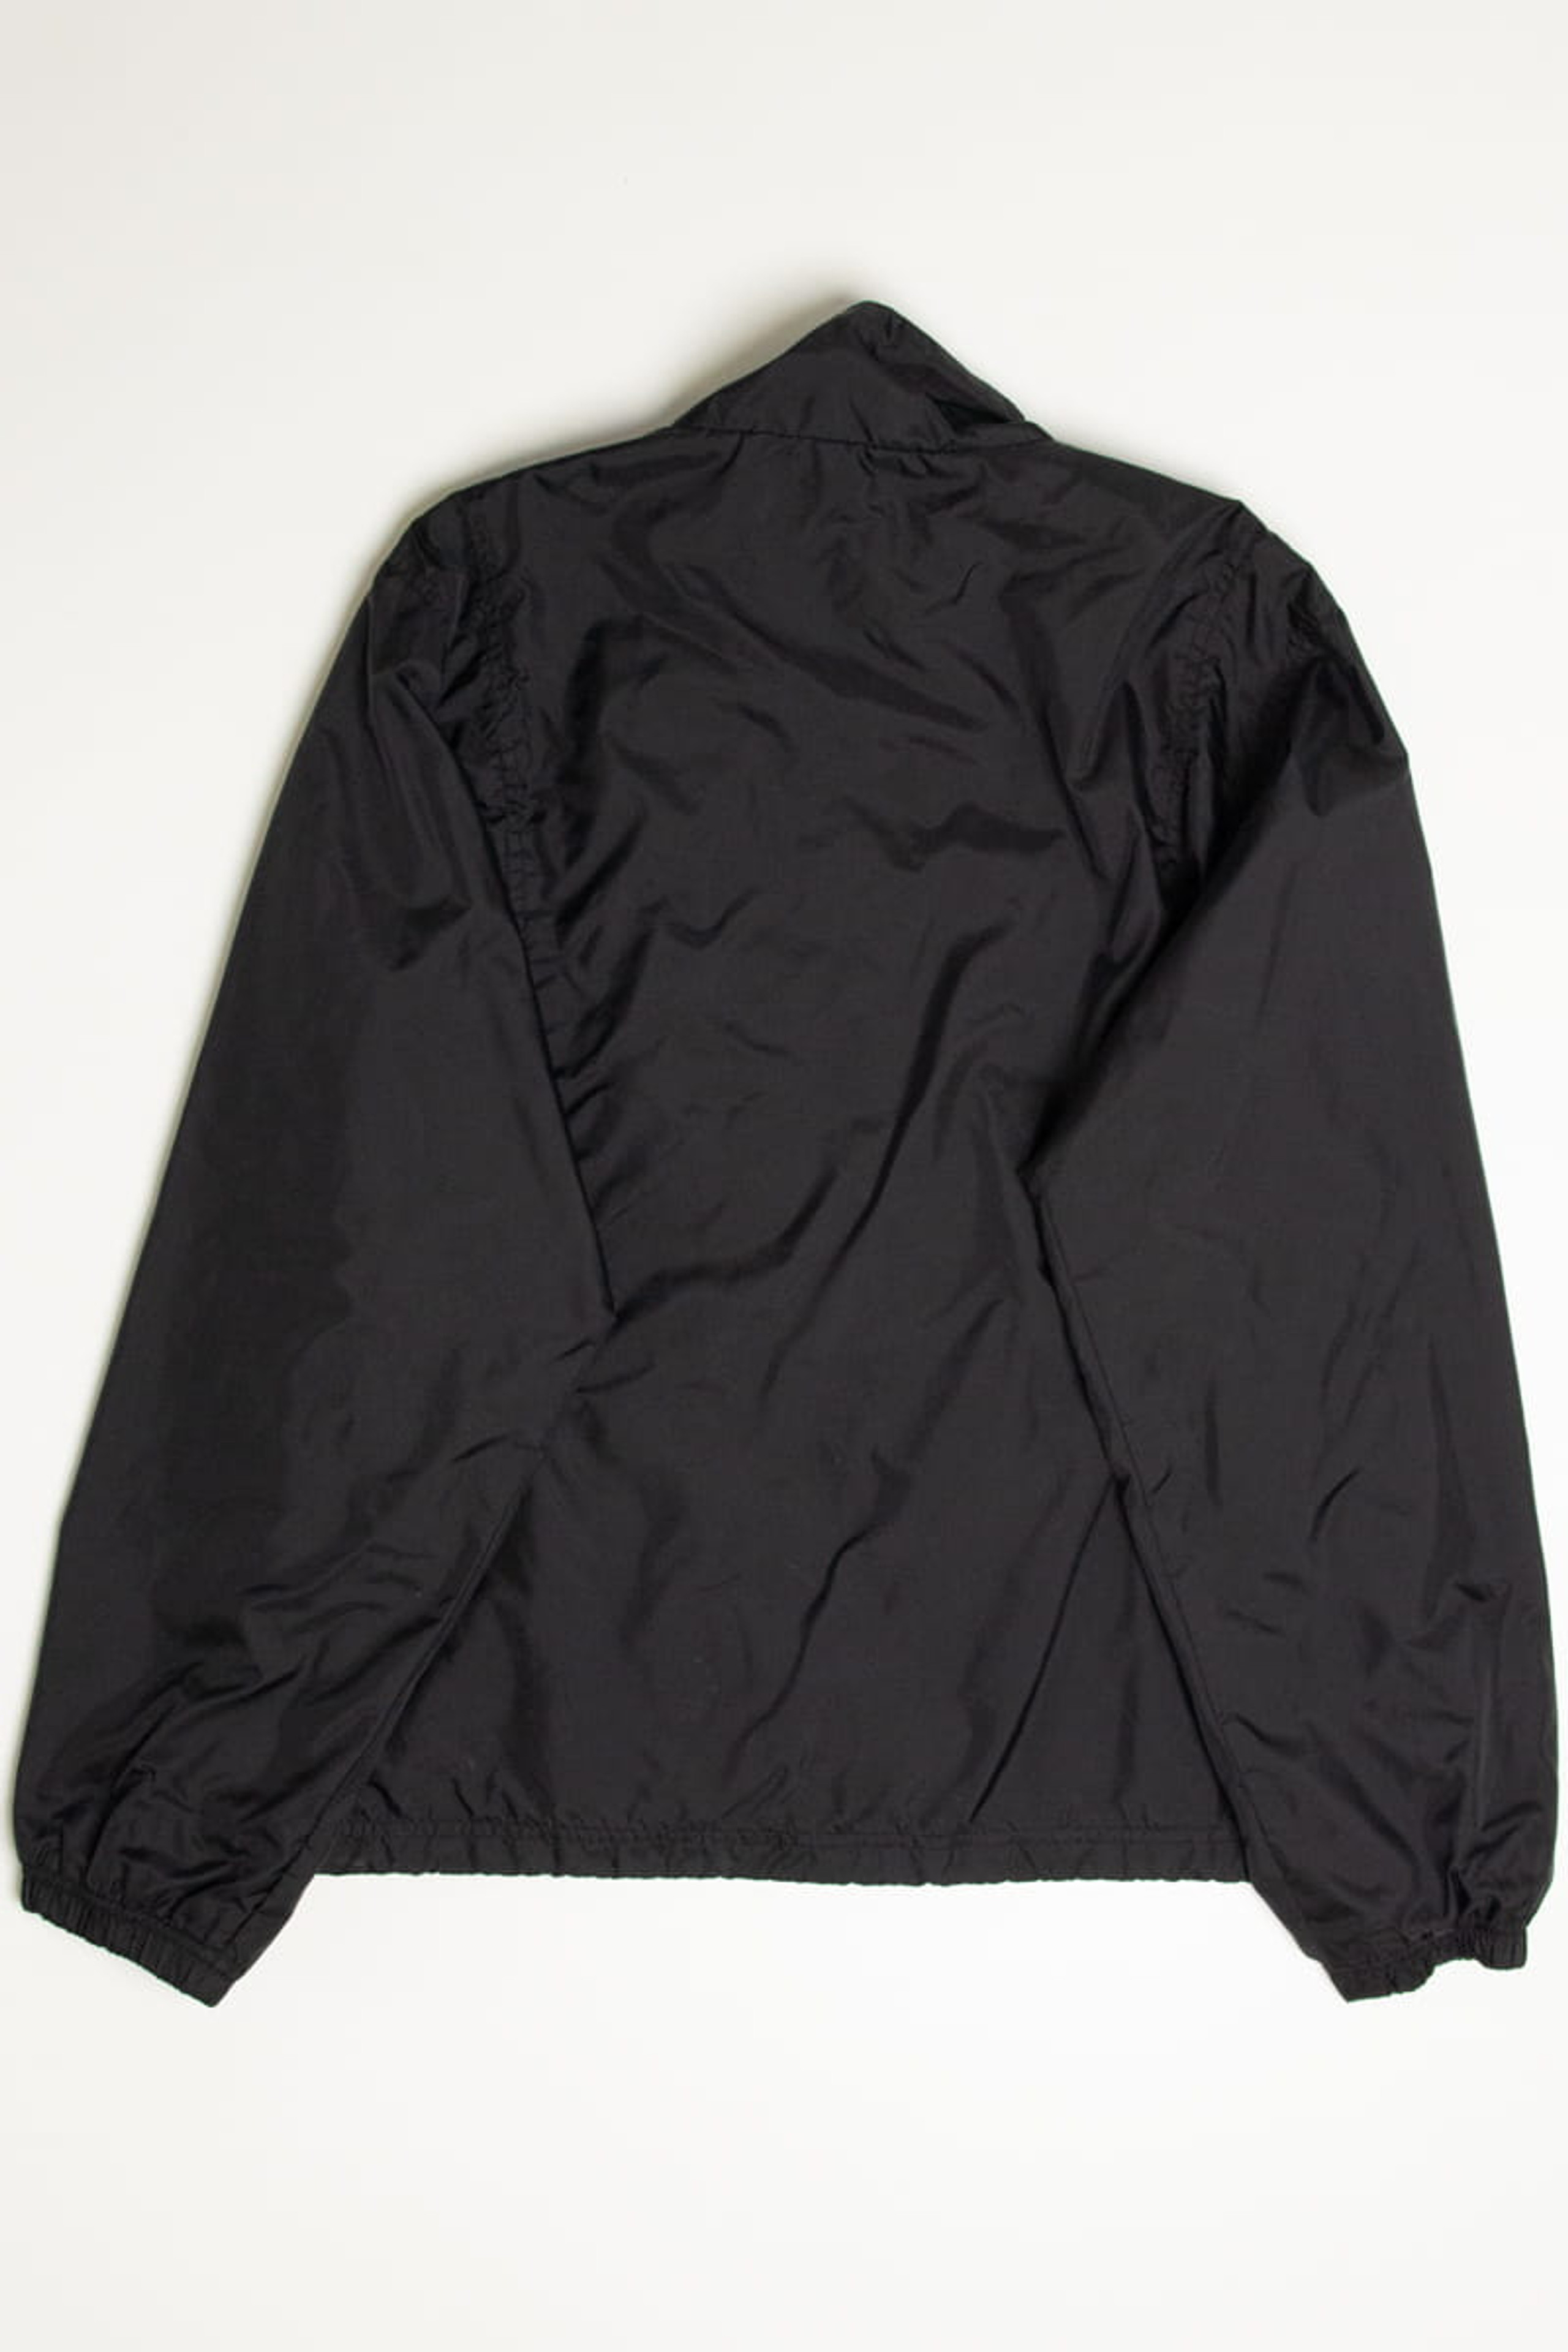 Vintage Jackets - 80s & 90s Windbreaker Jackets + More | Ragstock